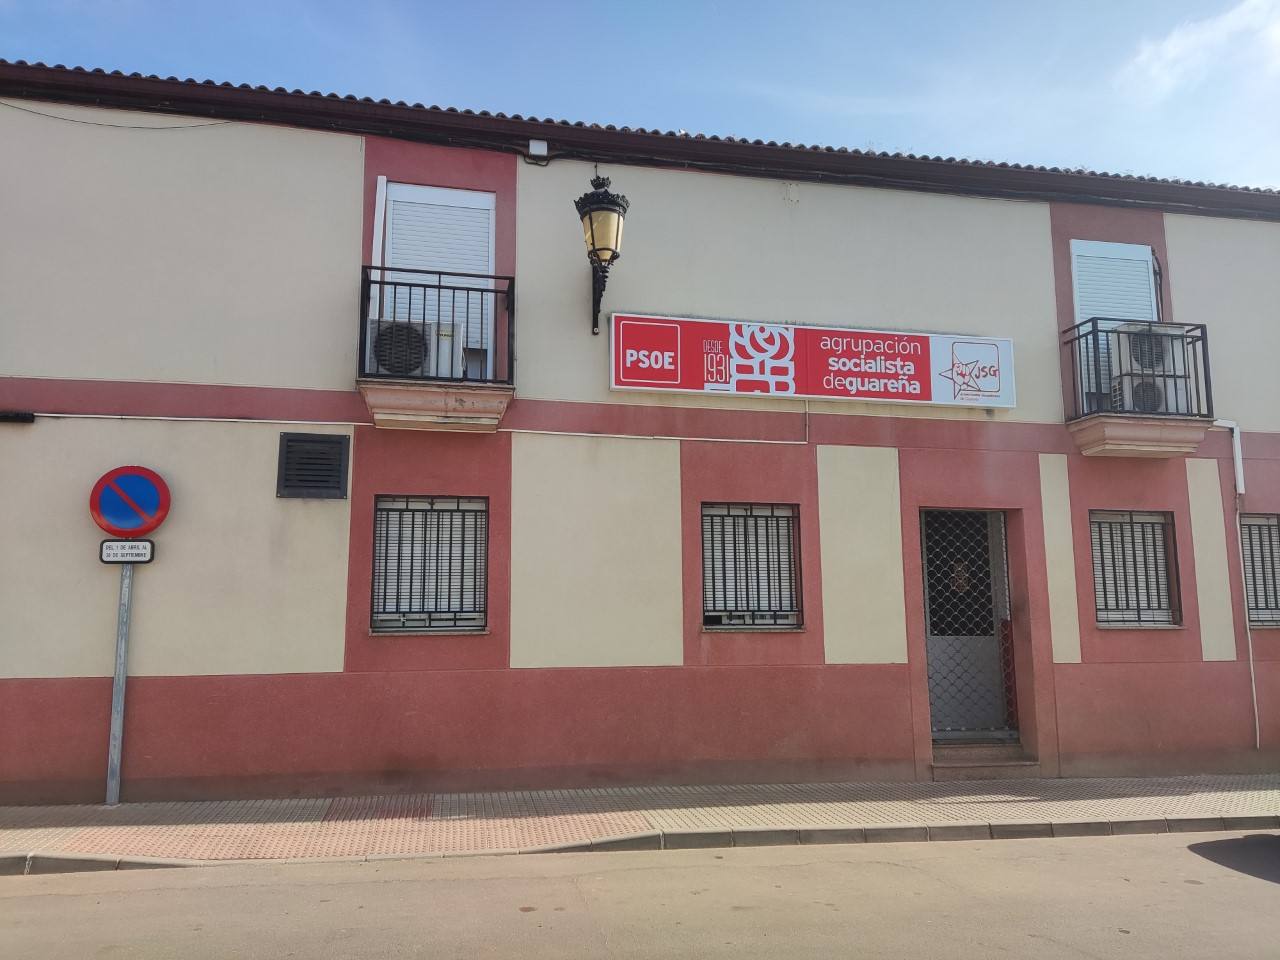 Cerrado el bar de la sede del PSOE tras recibir la visita de un inspector de Trabajo